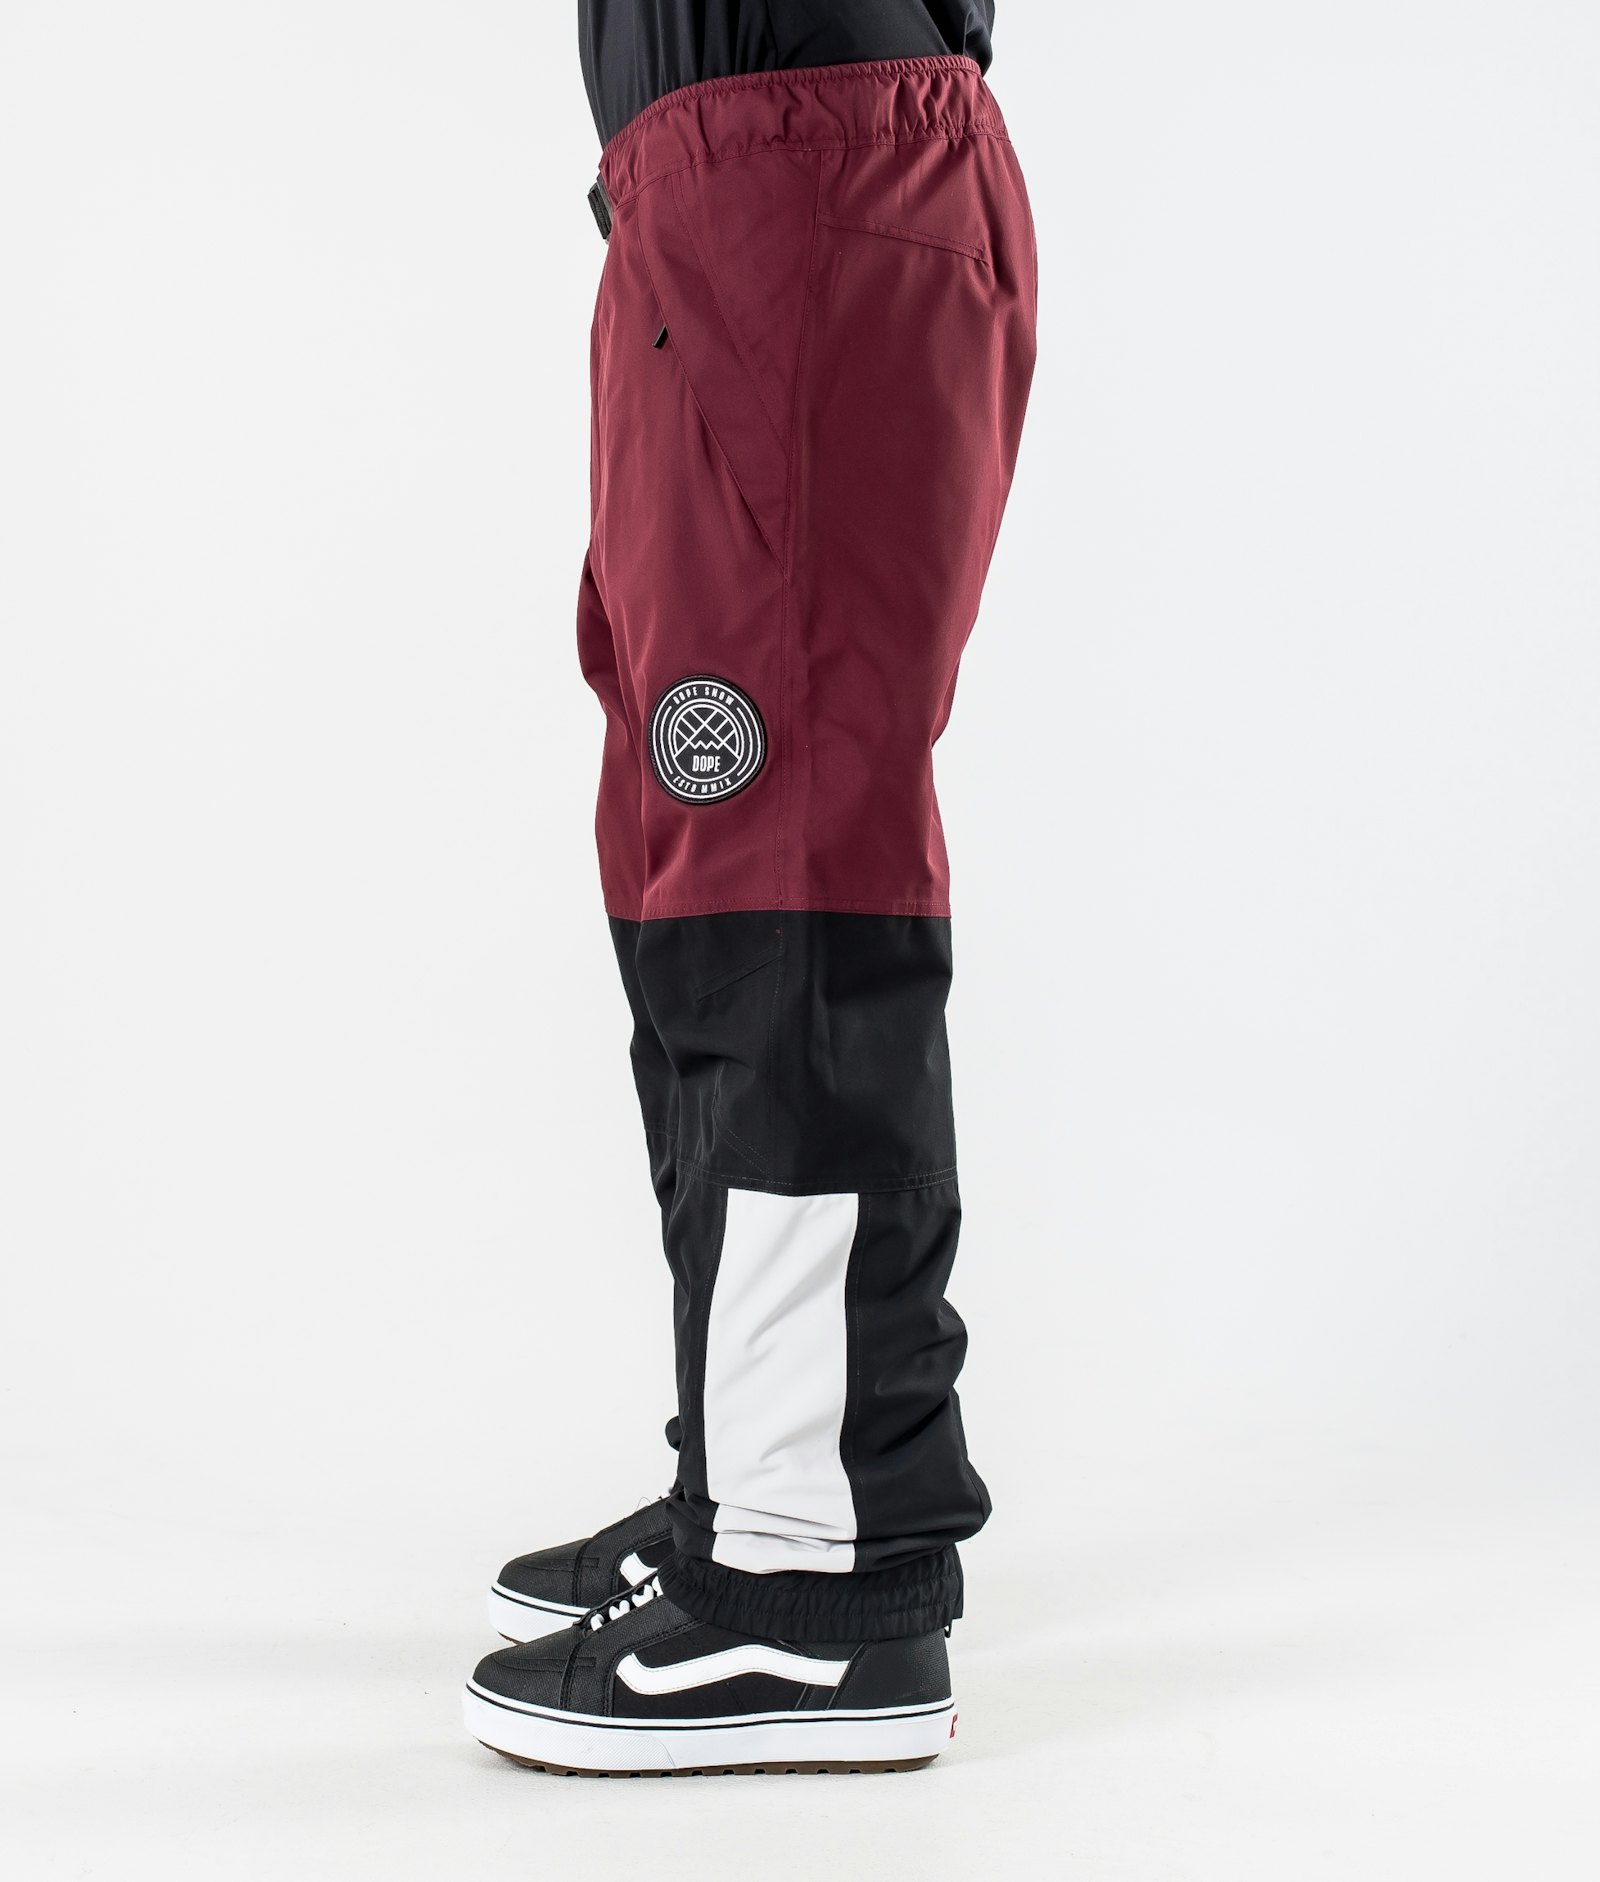 Dope Blizzard 2020 Pantalon de Snowboard Homme Limited Edition Burgundy Multicolour